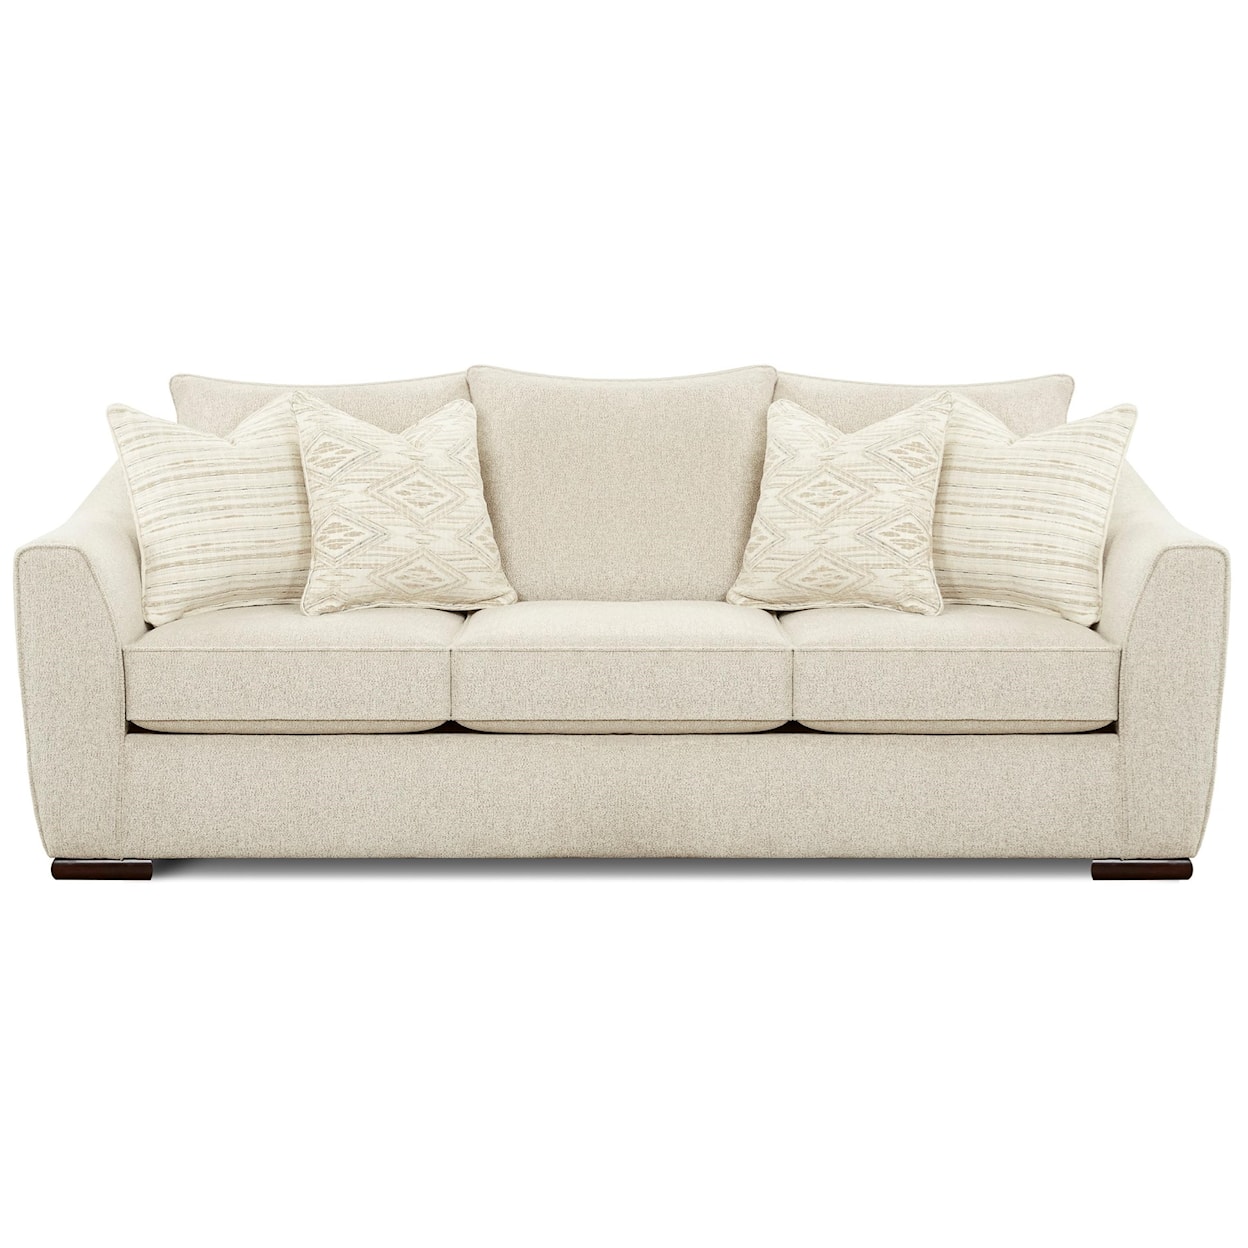 Fusion Furniture 9778 VIBRANT VISION OATMEAL Sofa